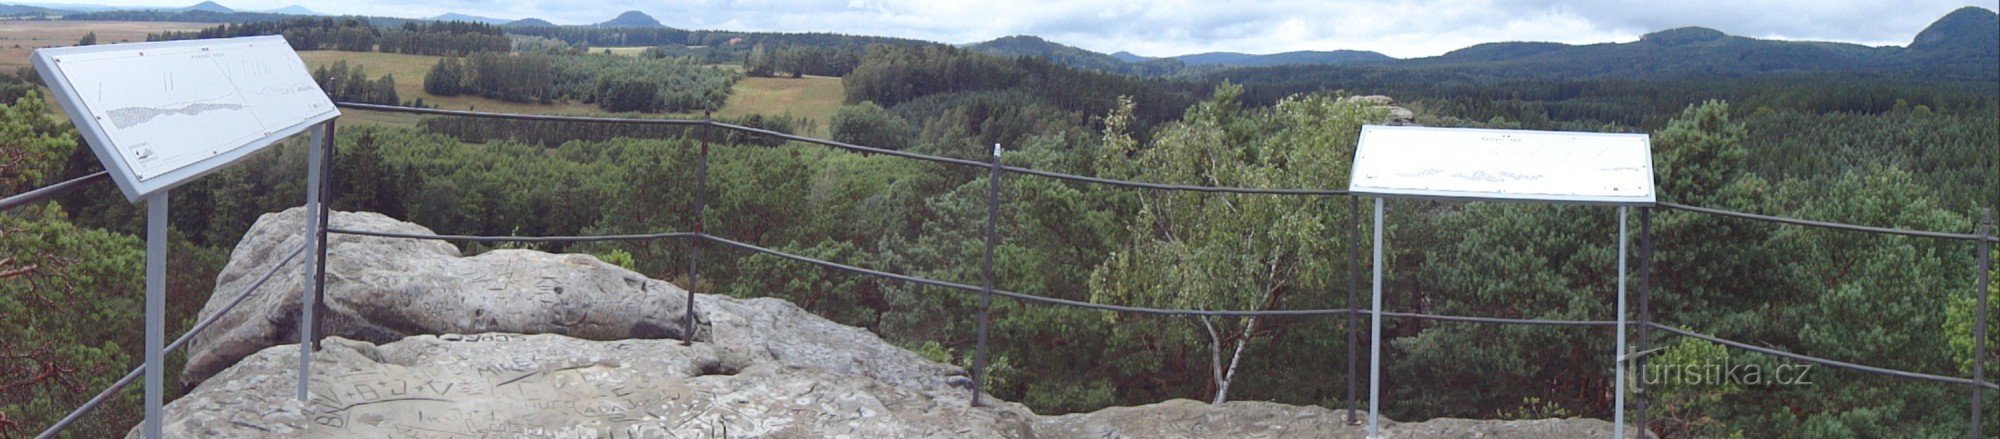 πανόραμα από το οροπέδιο κορυφής των Raven Rocks